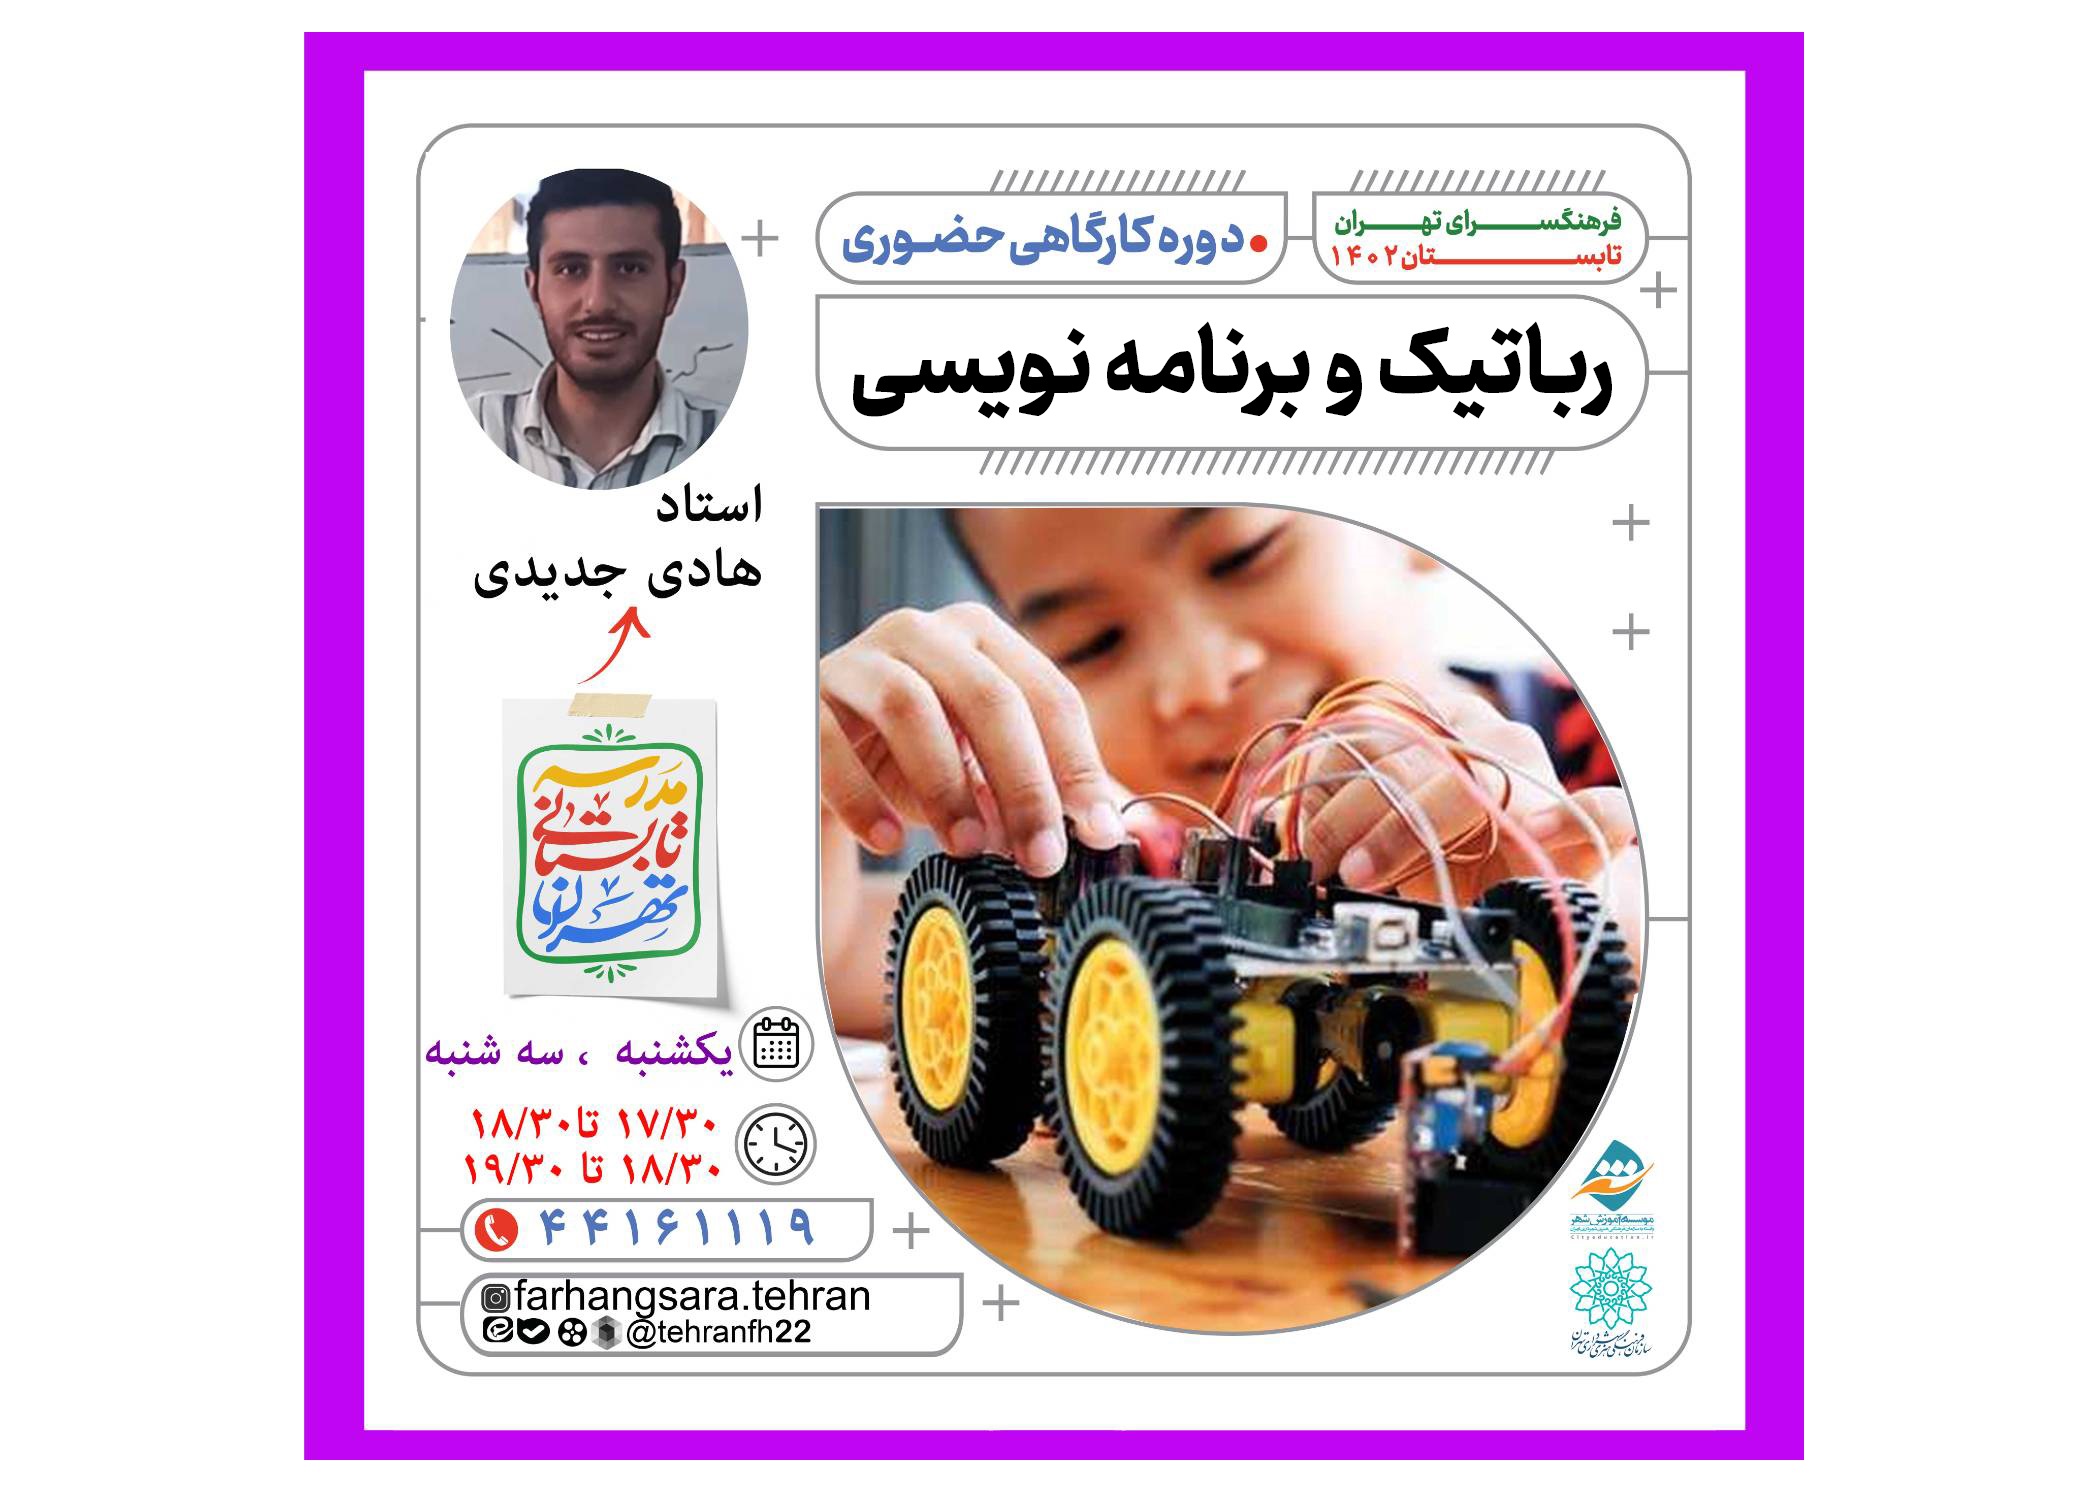 کارگاه آموزش  رباتیک و برنامه نویسی در مدرسه تابستانی فرهنگسرای تهران